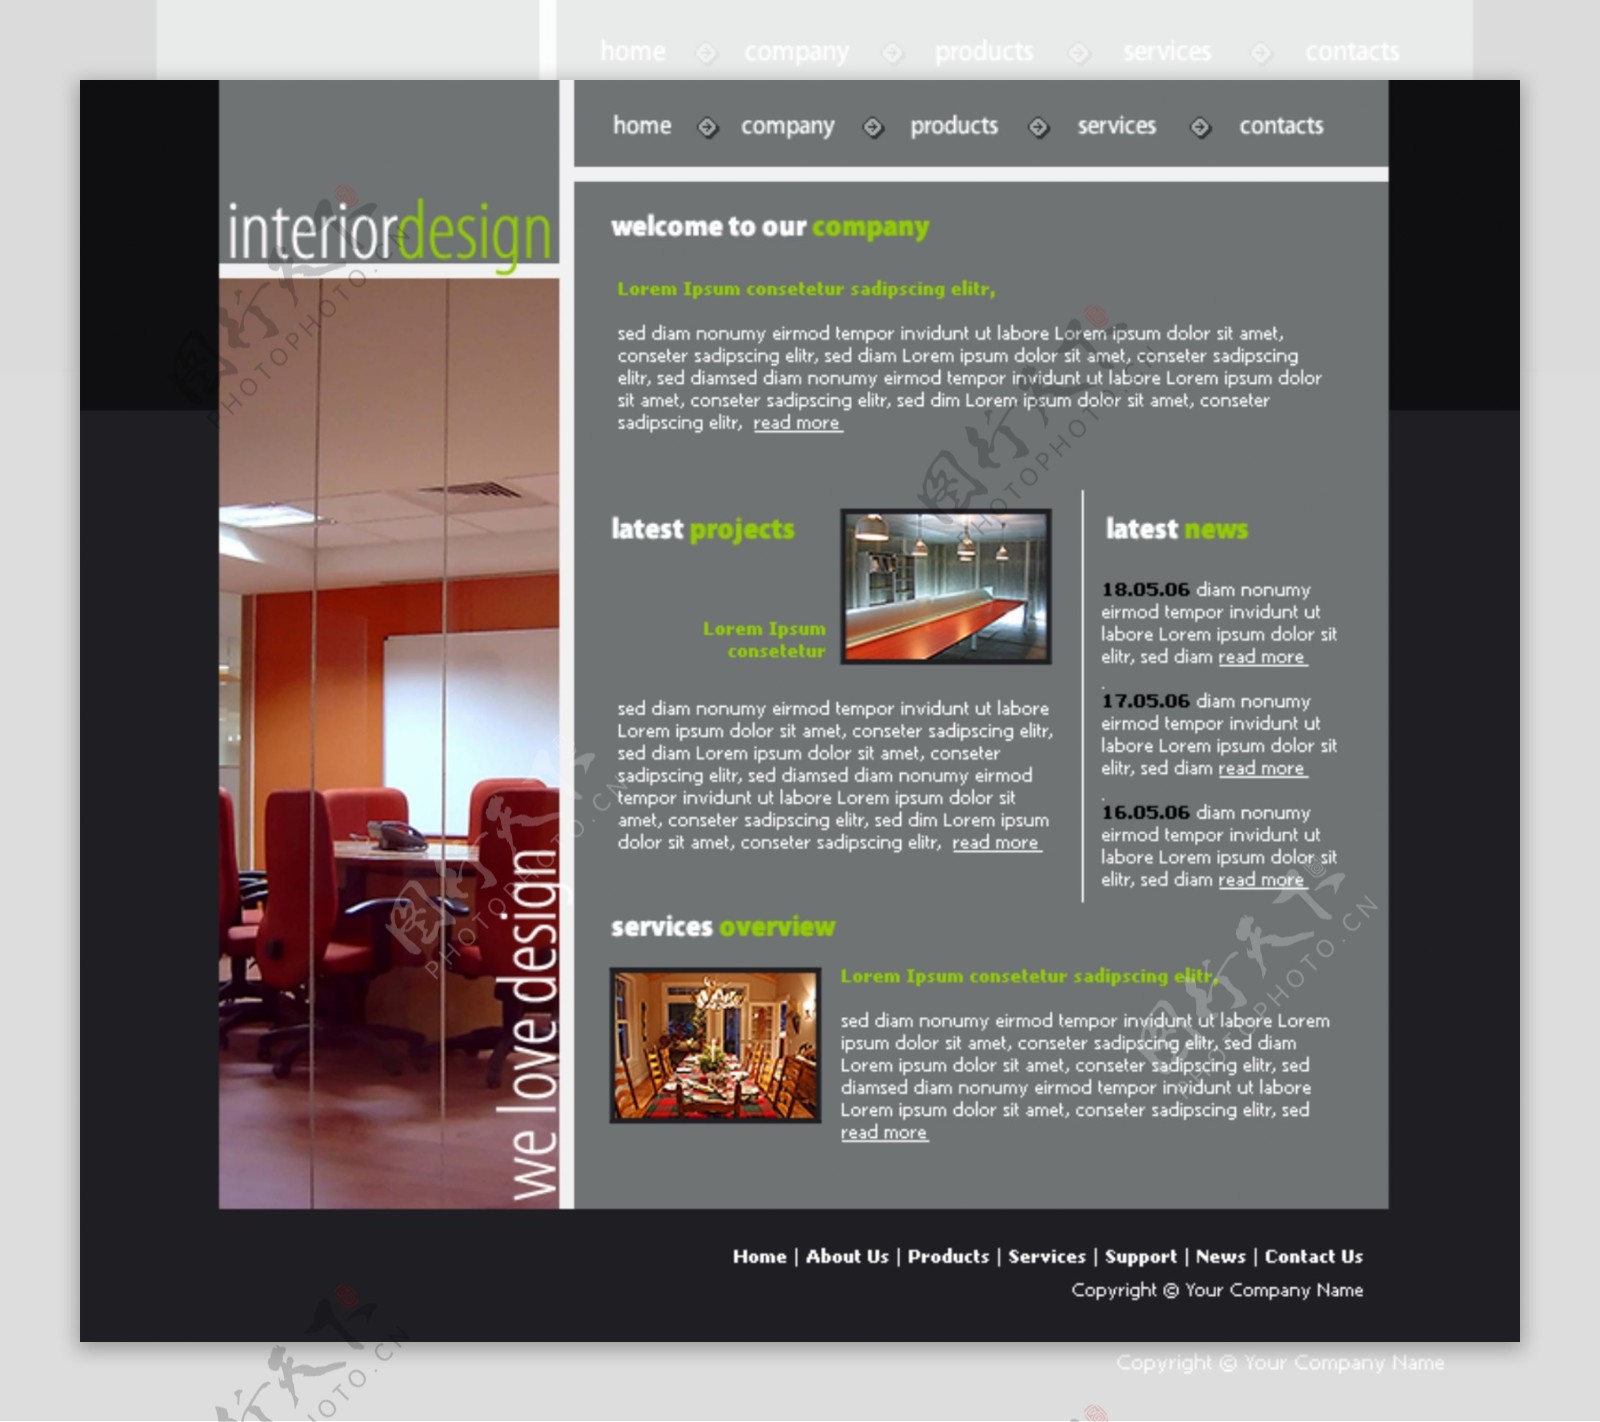 室内设计公司网页模板